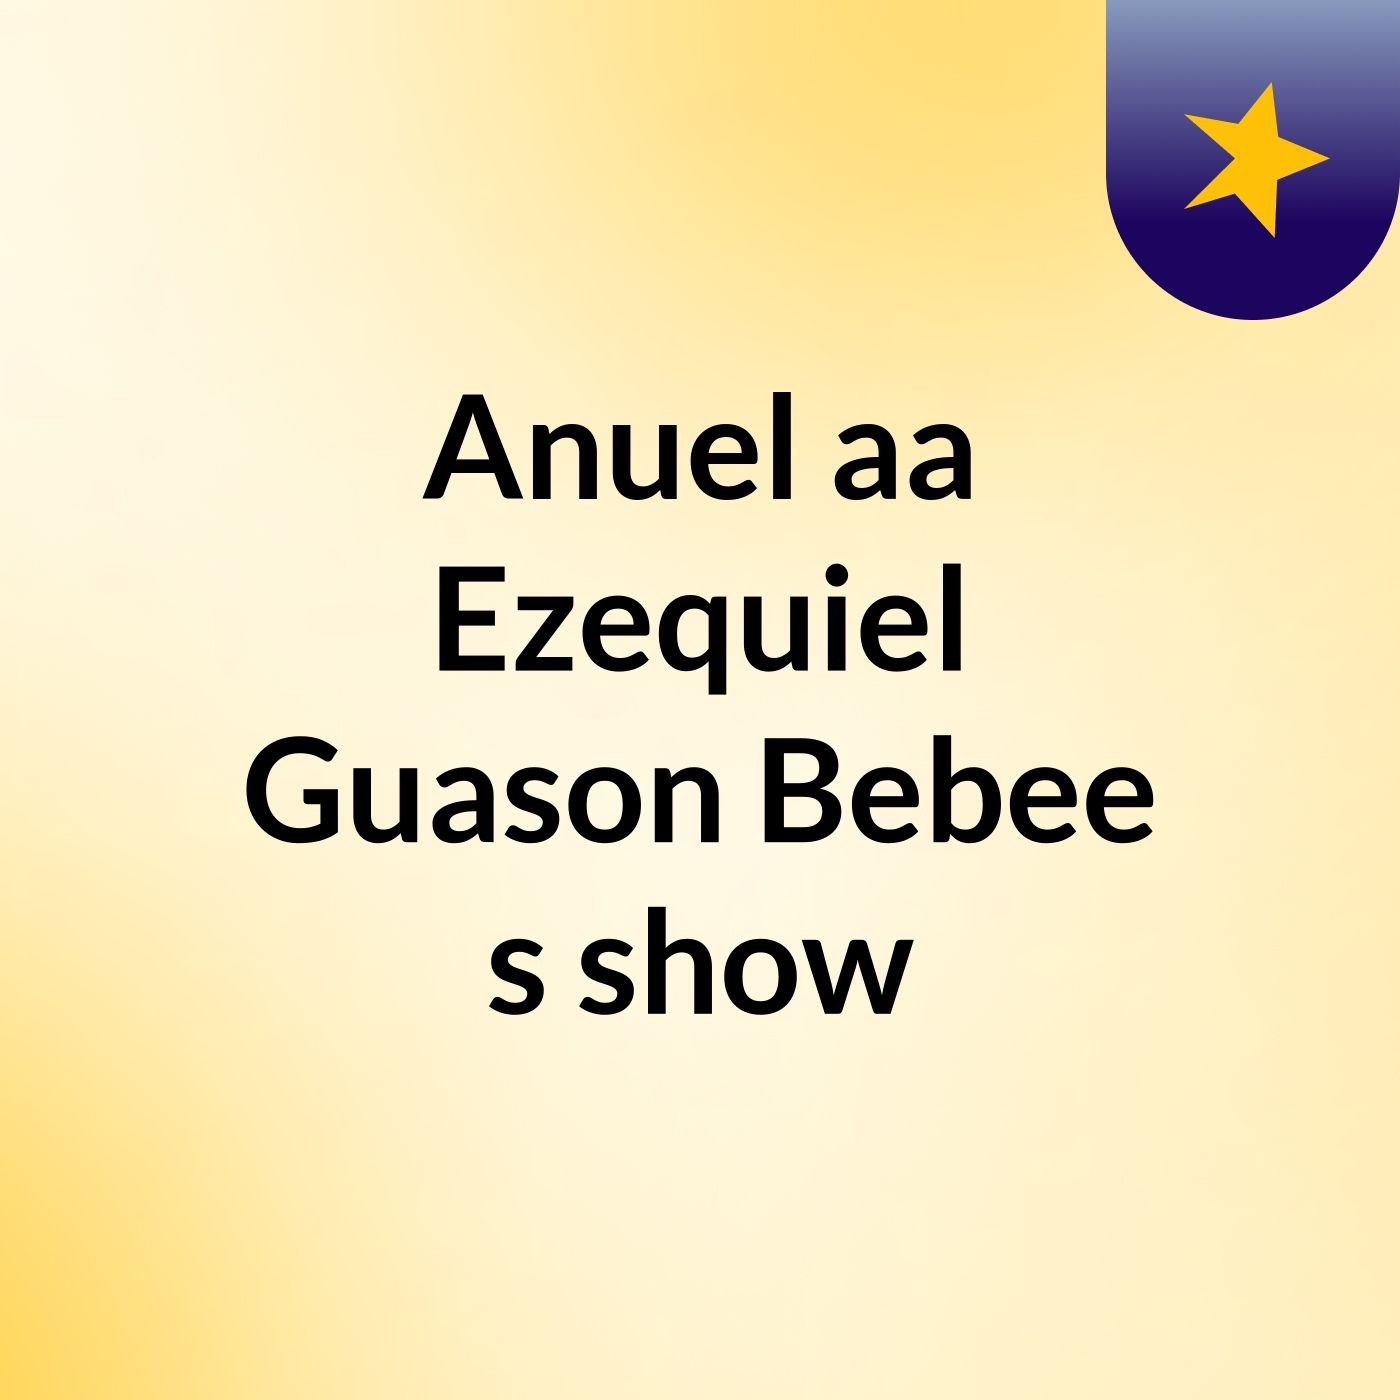 Anuel'aa Ezequiel Guason Bebee's show